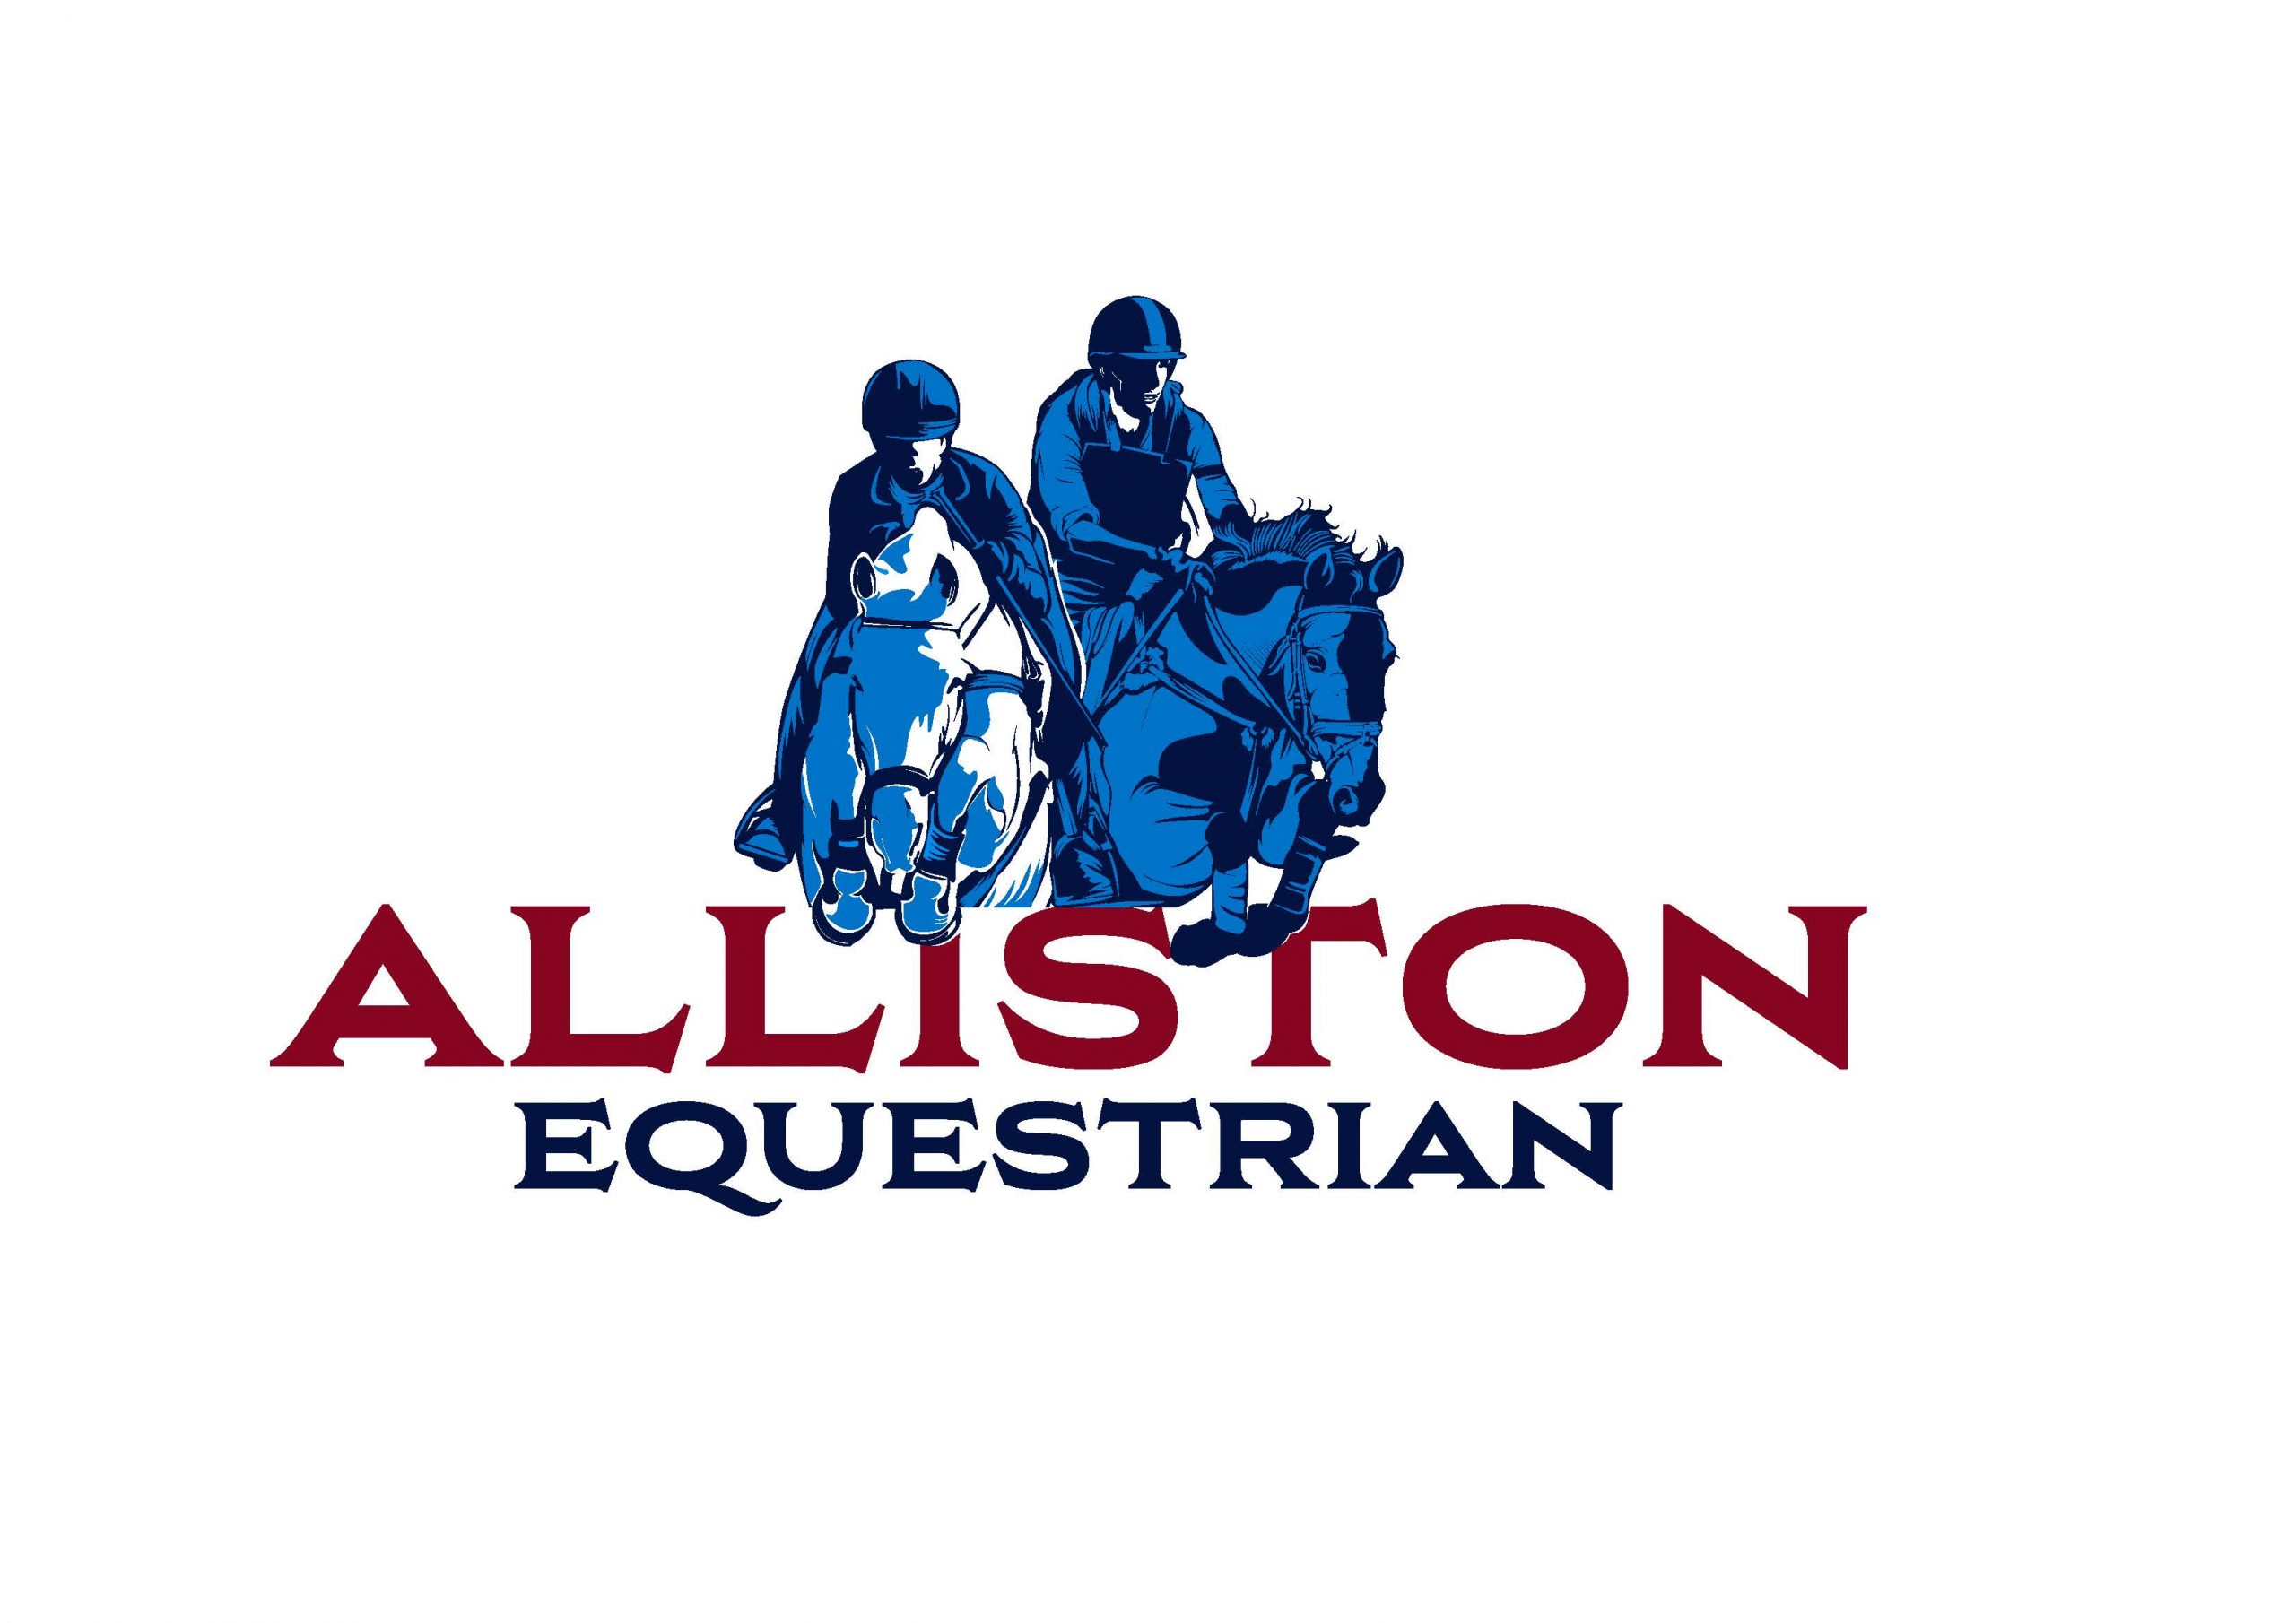 Alliston Equestrian